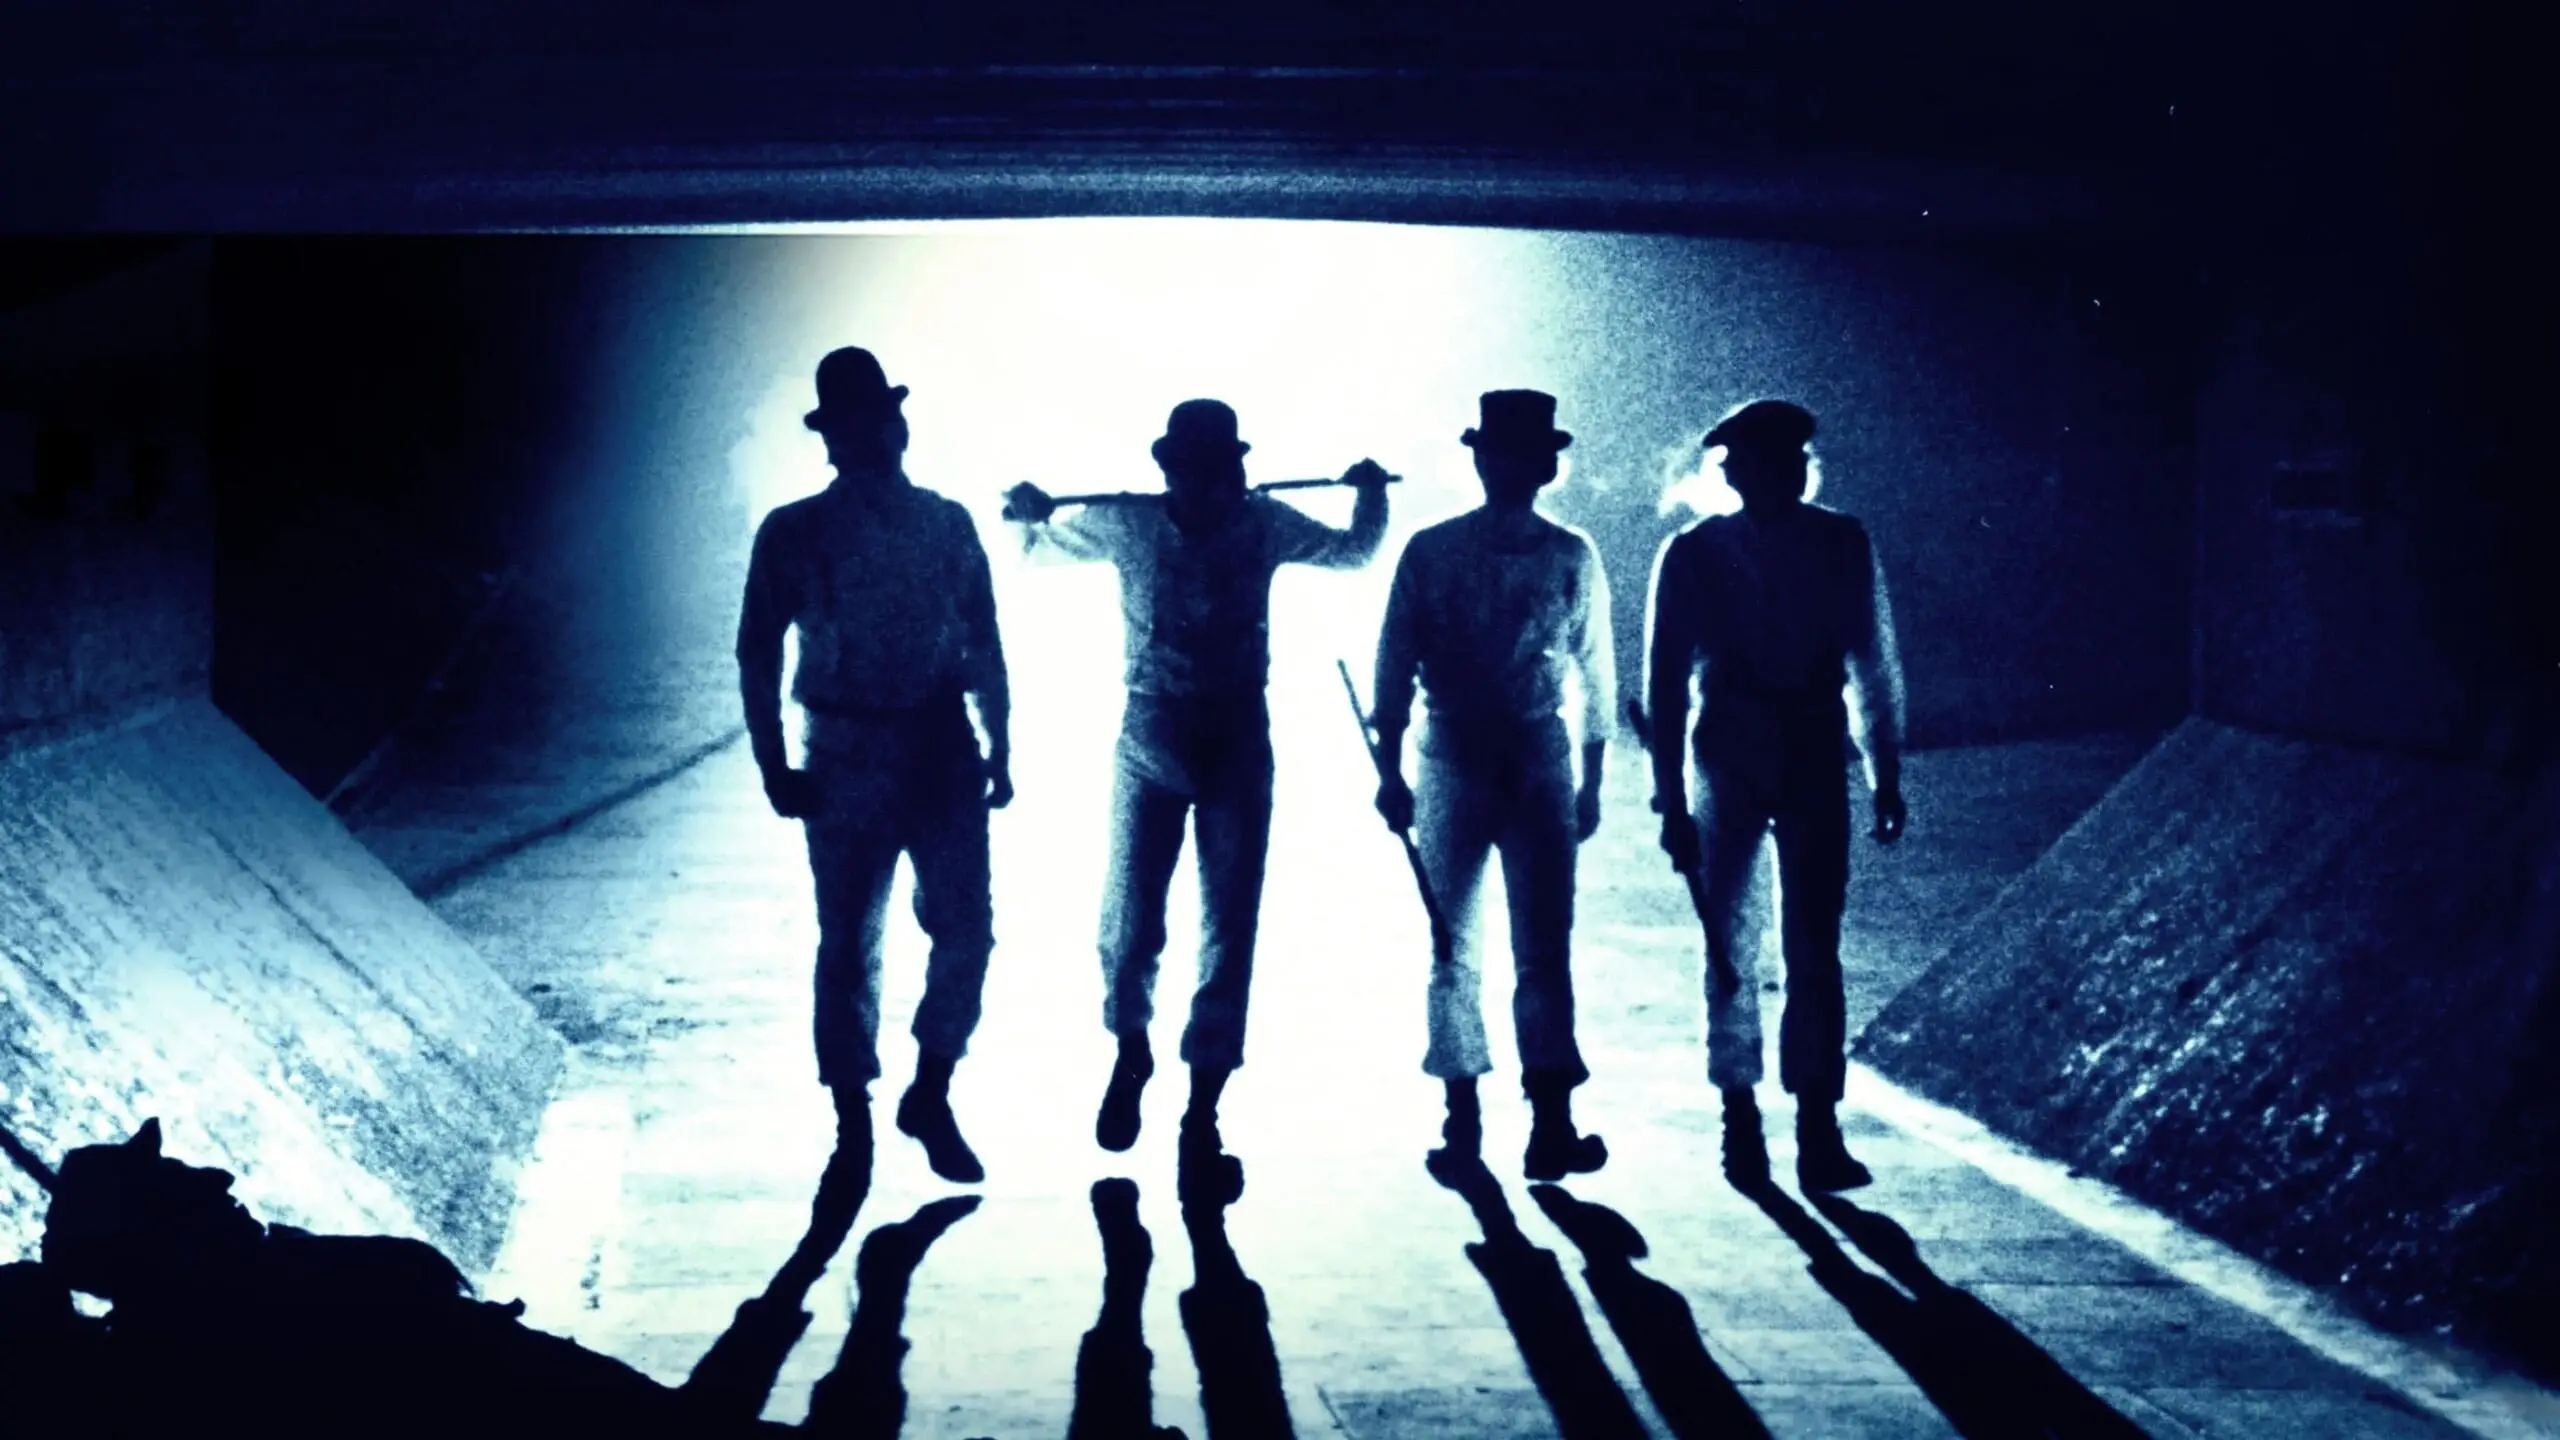 چهار خلافکار فیلم پرتقال کوکی ساخته استنلی کوبریک در تونلی تاریک